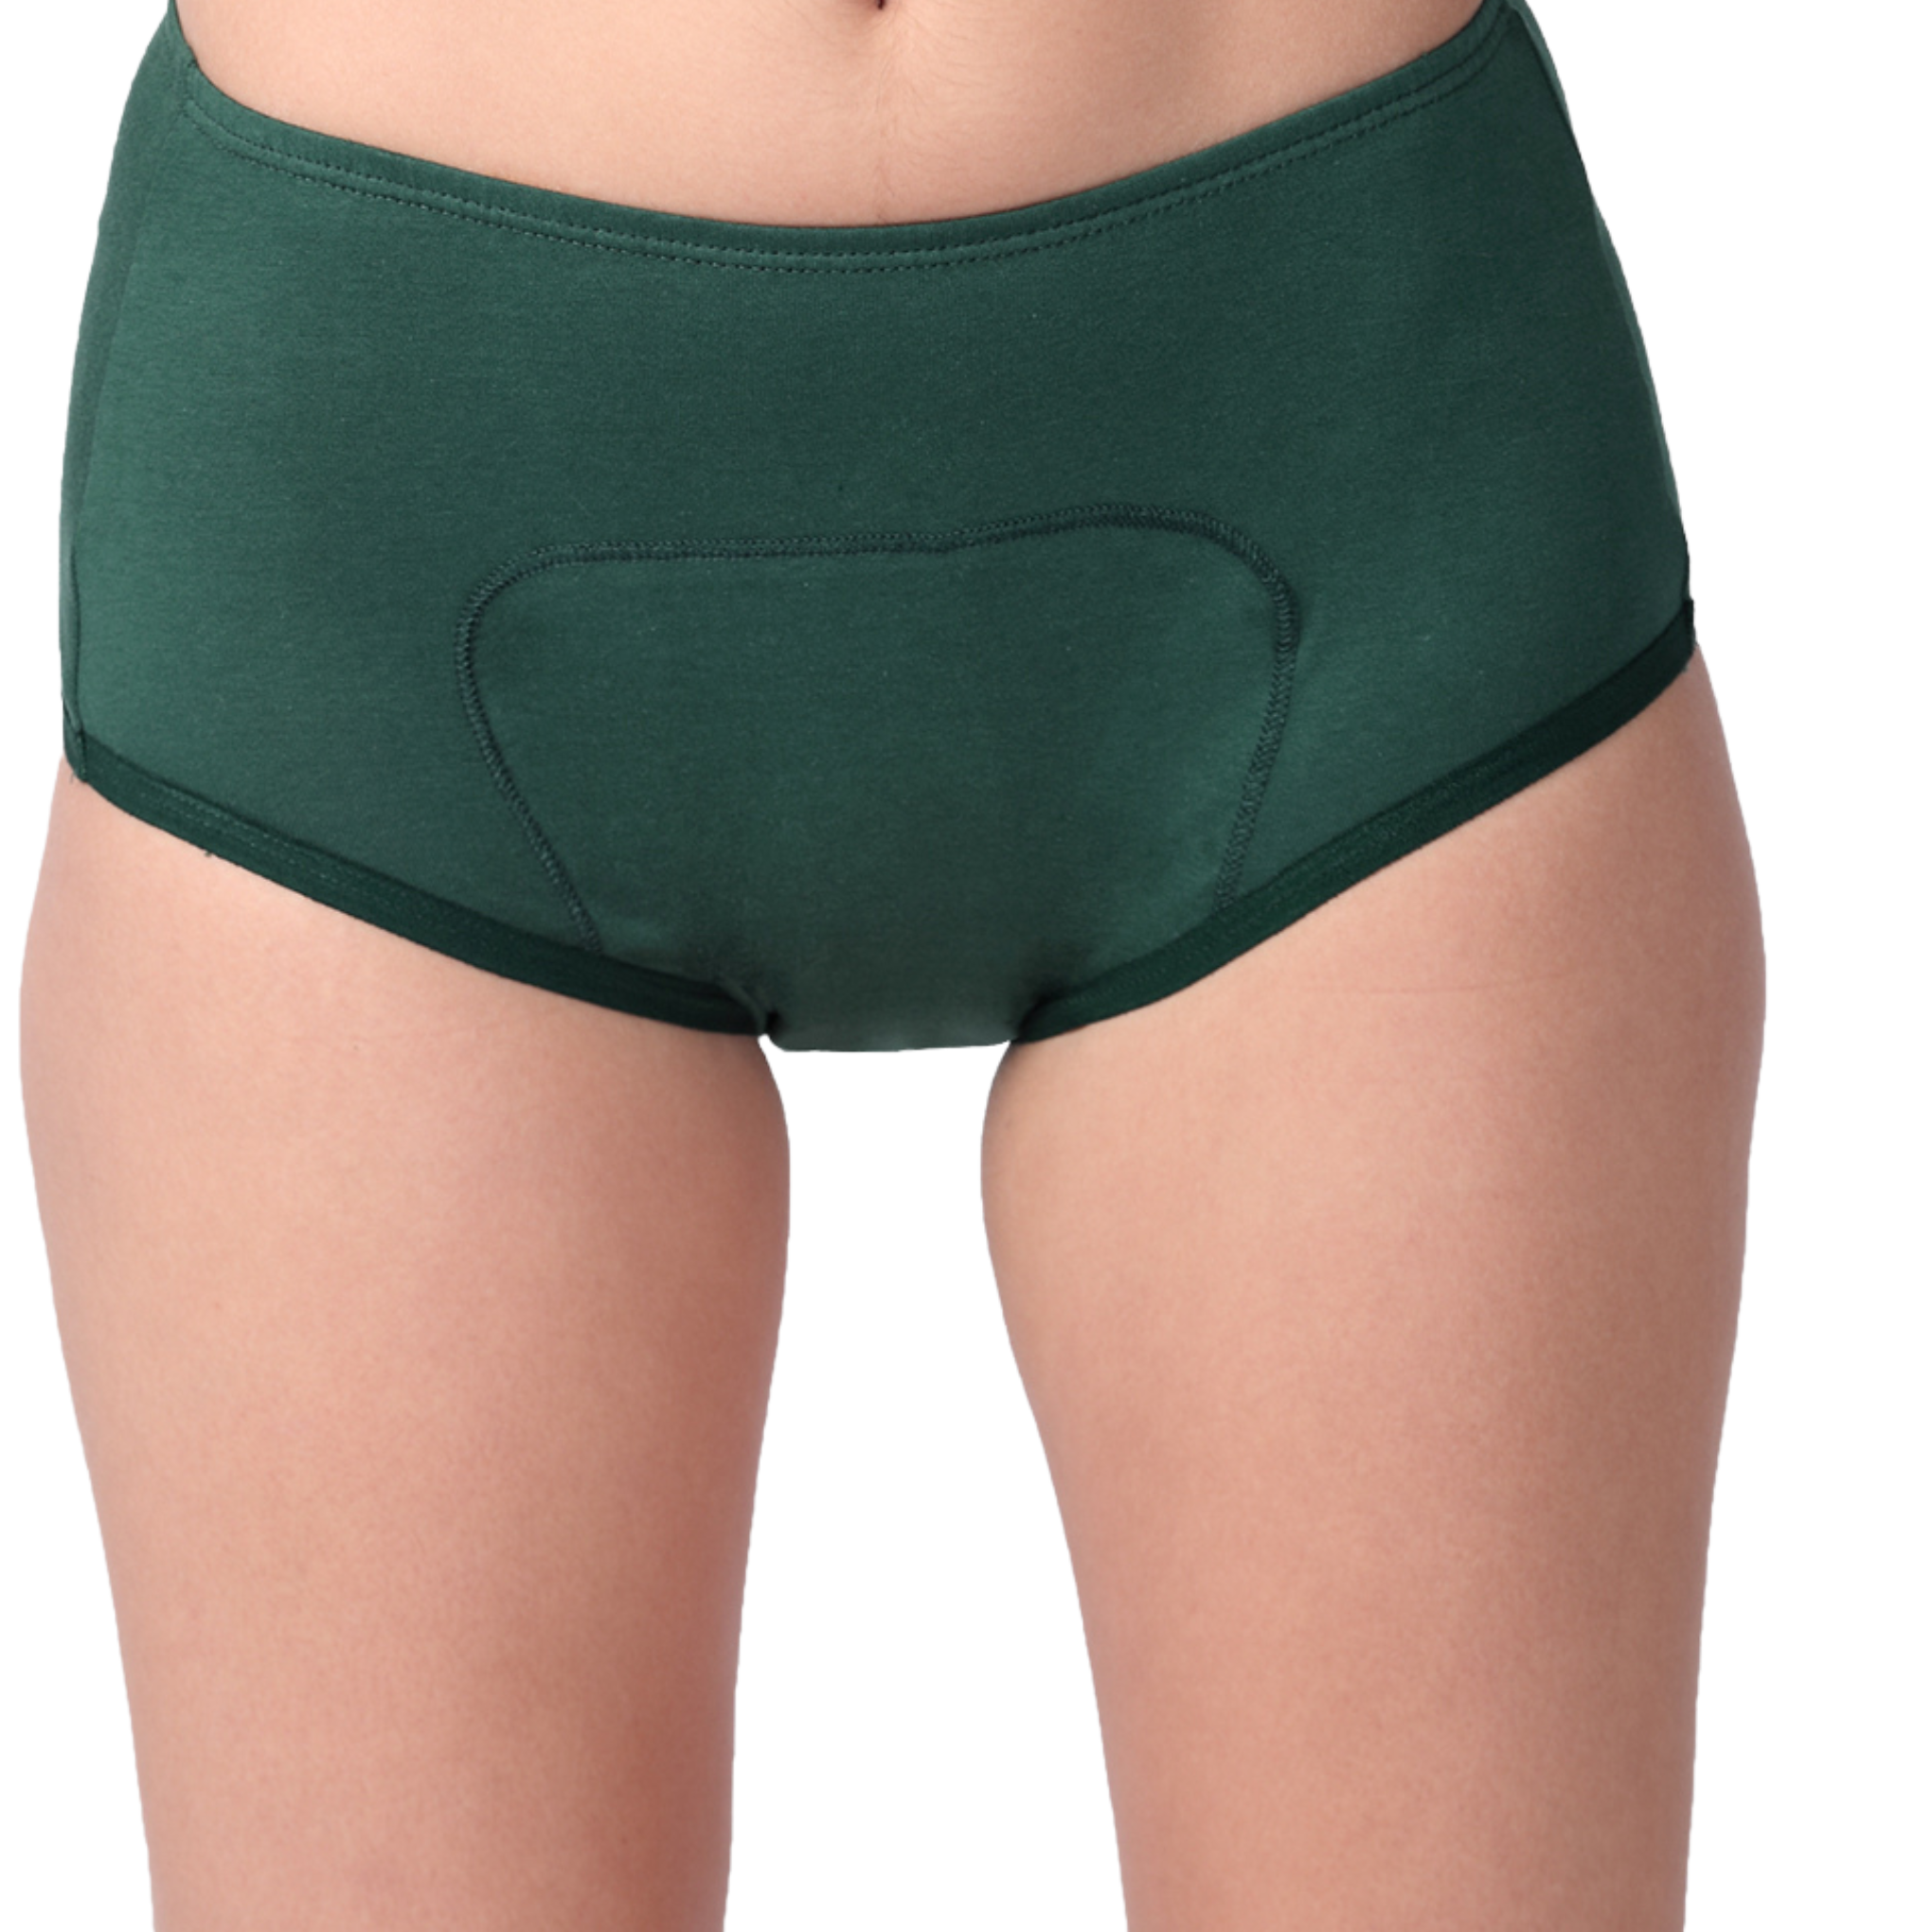 Green Period Panty Boxer